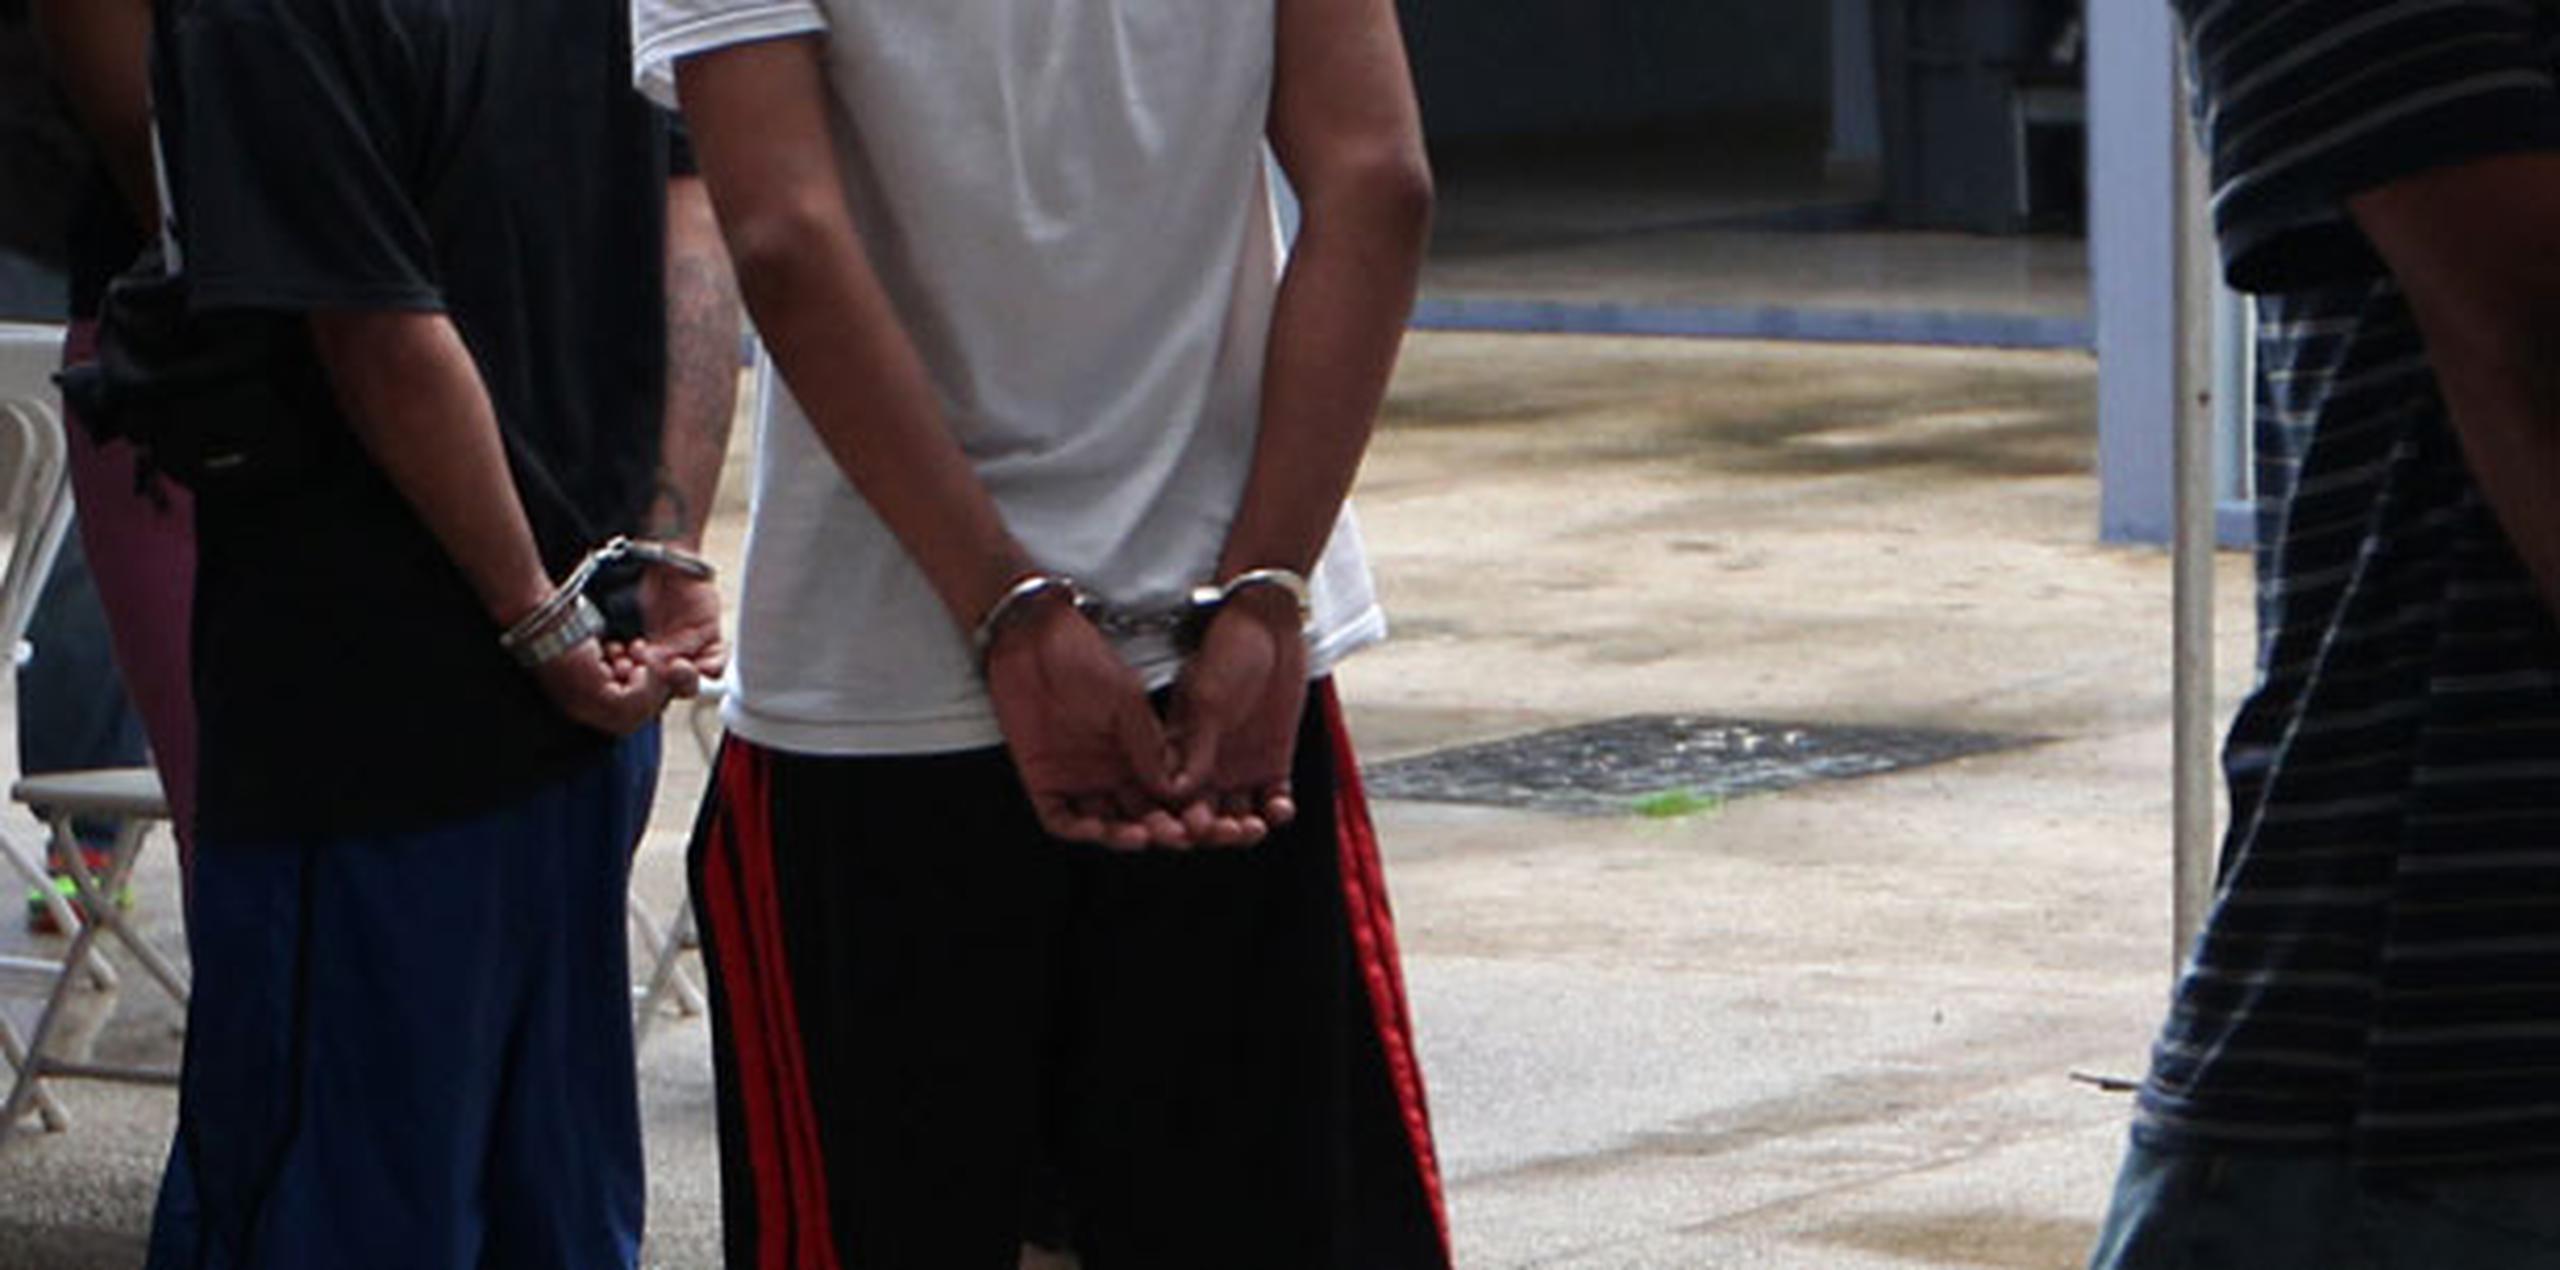 El hombre que lo acompañaba no tenía antecedentes penales o de inmigración, por lo que fue procesado para deportación a la República Dominicana. (Archivo)